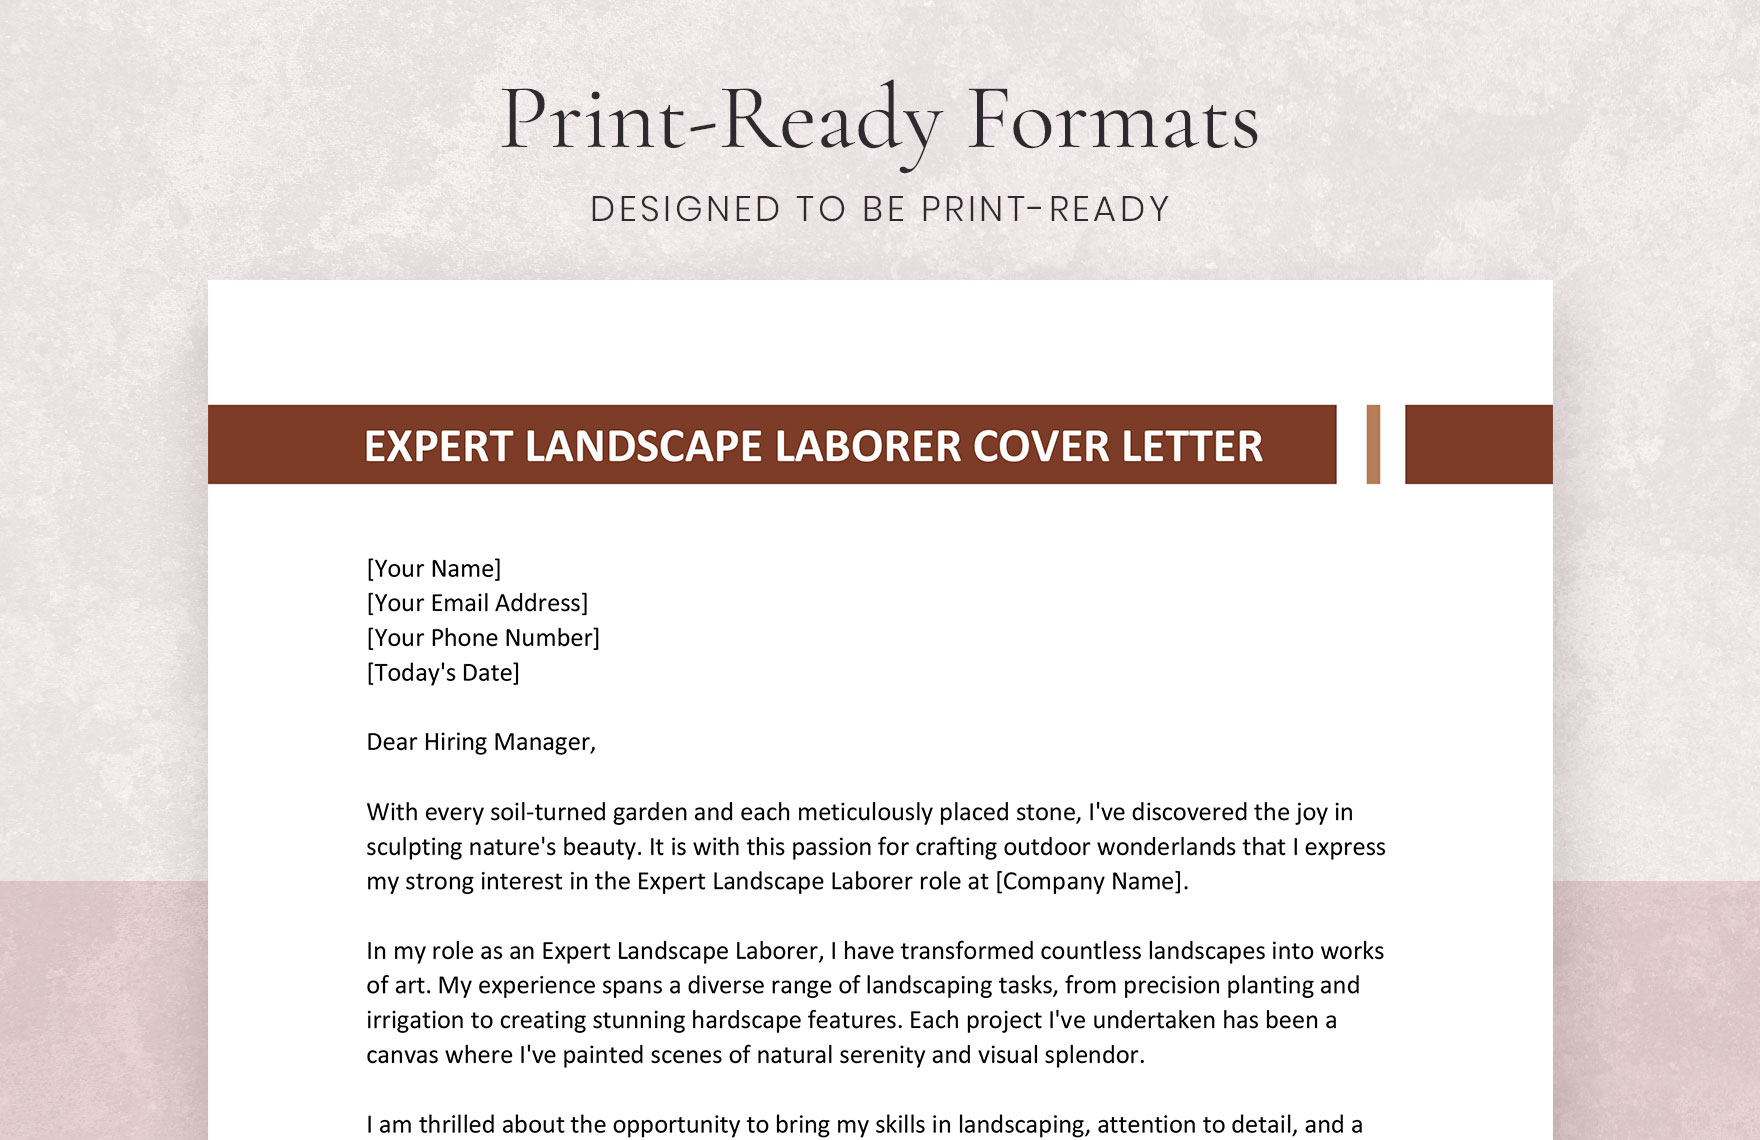 Expert Landscape Laborer Cover Letter